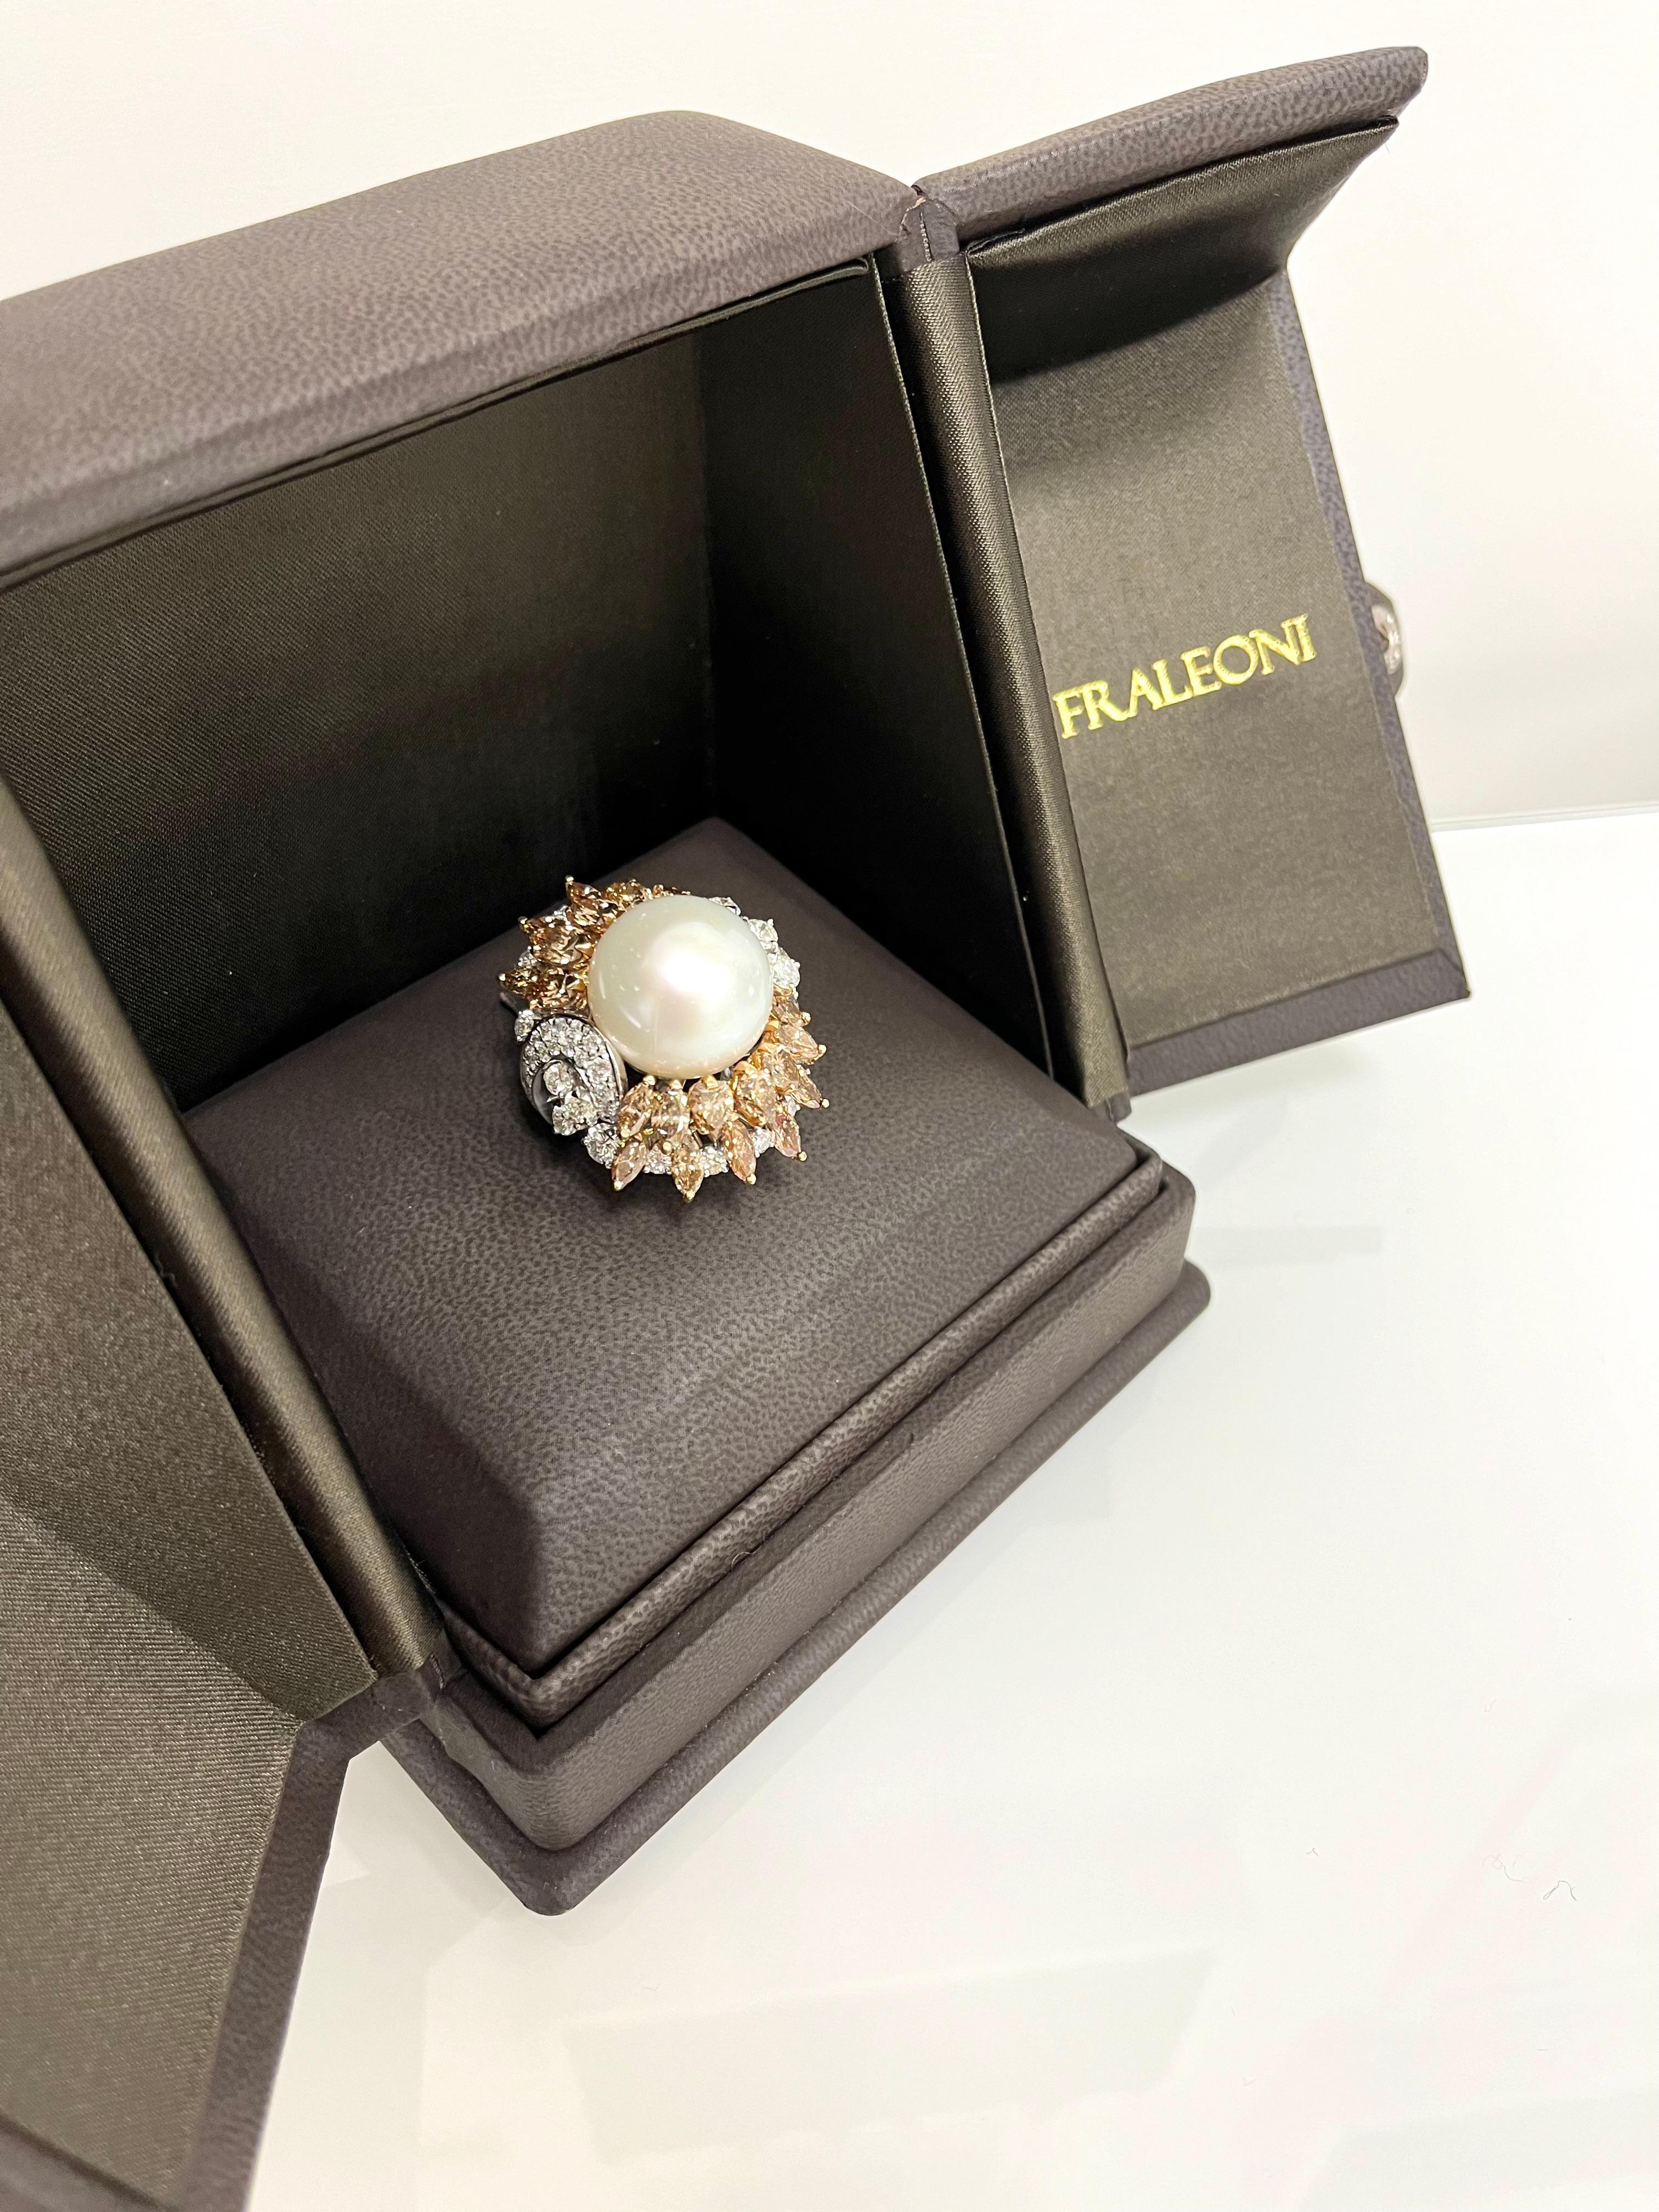 Fraleoni 18 Kt. White Gold Diamond Australian Pearl Cocktail Ring For Sale 2